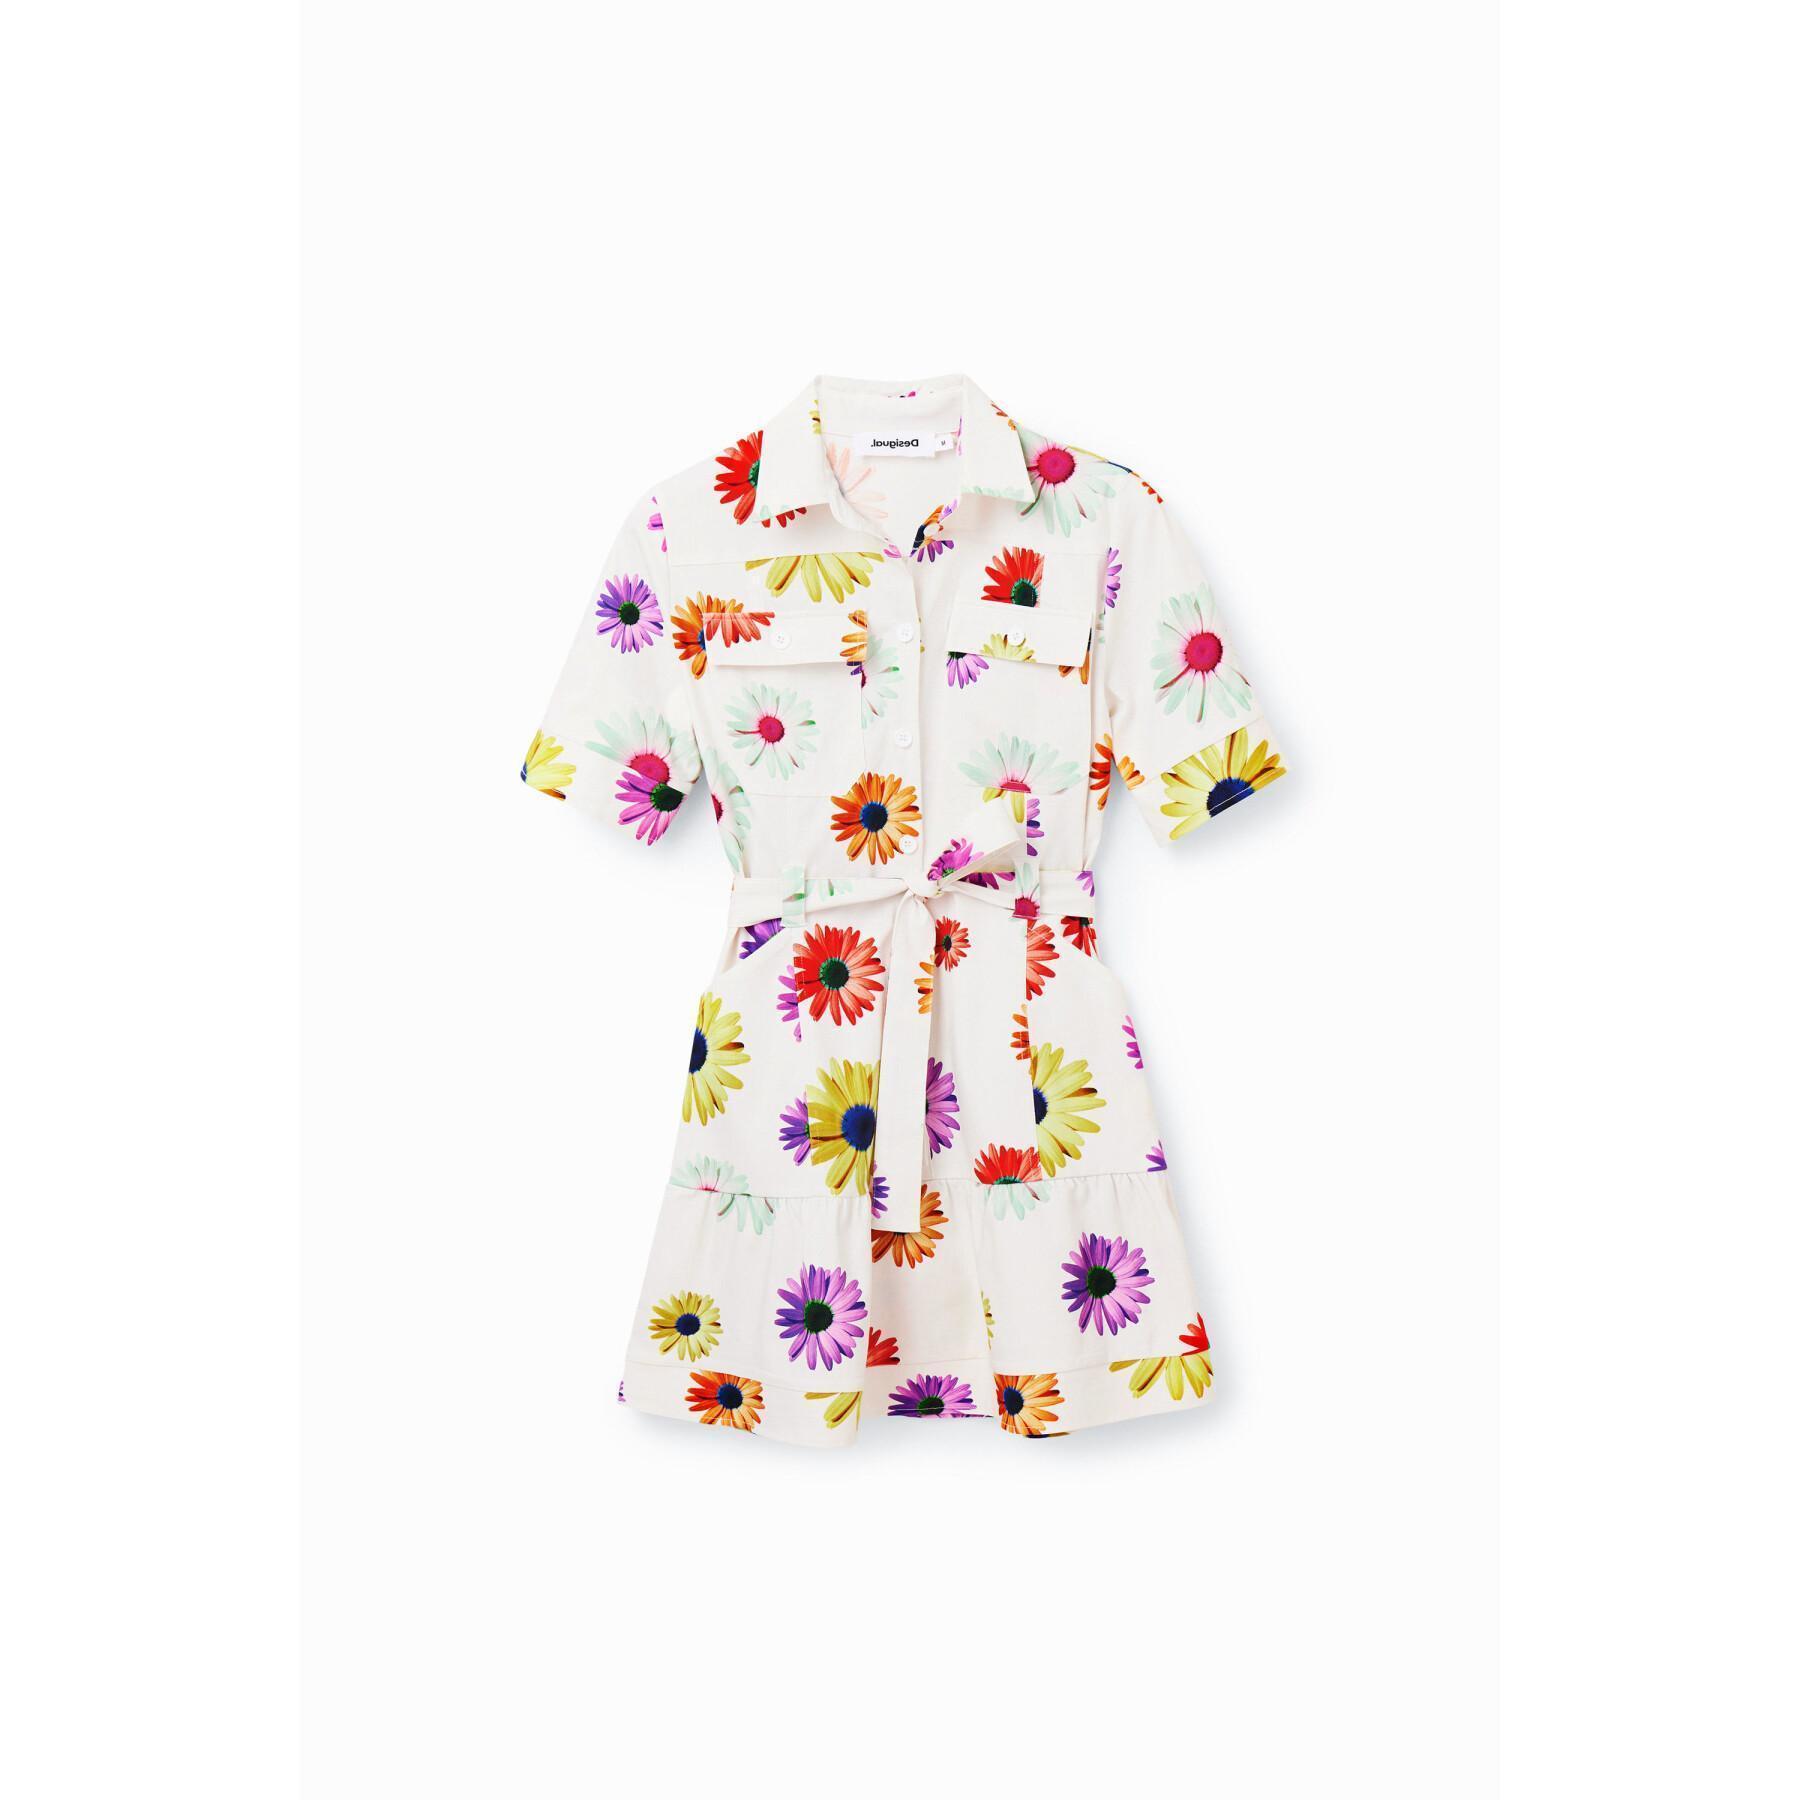 Damska krótka sukienka koszulowa w kwiaty Desigual M. Christian Lacroix